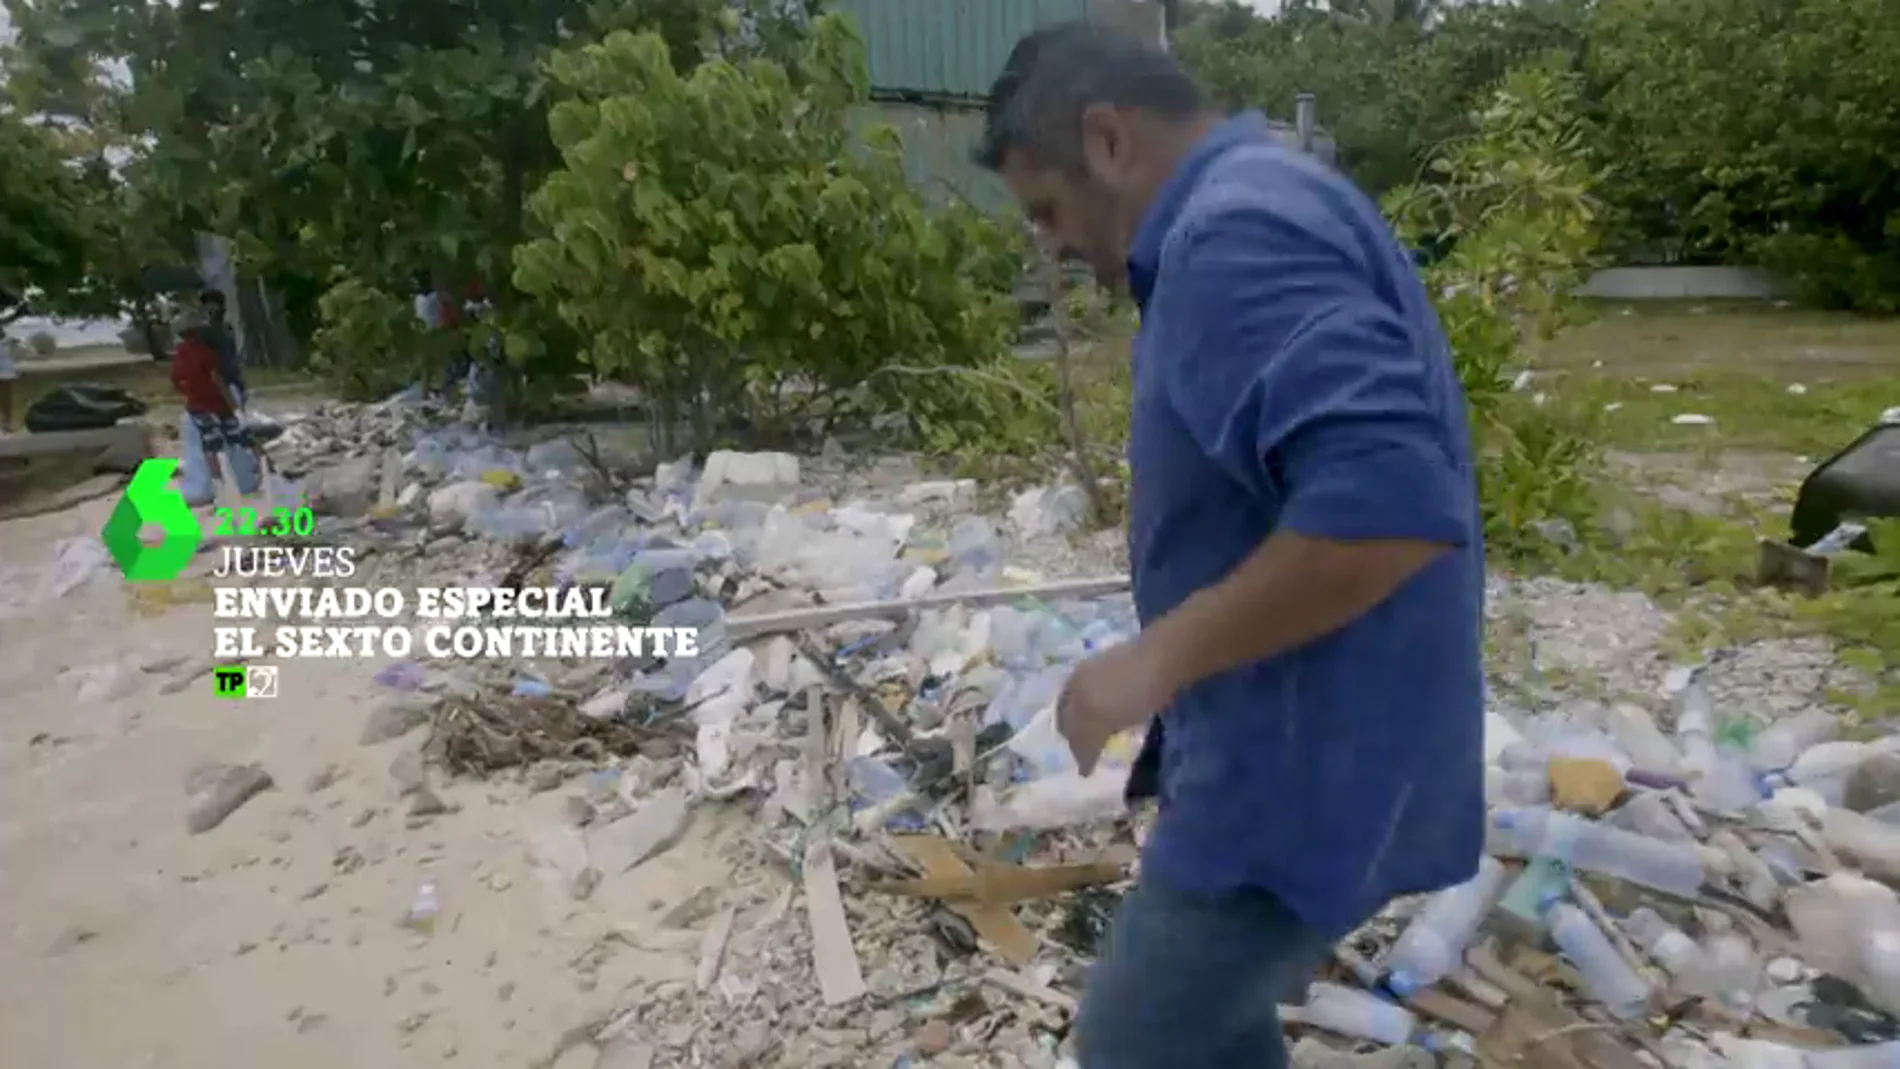 Enviado Especial, viaja al el sexto continente:  "Es una isla hecha de basura y para la basura"